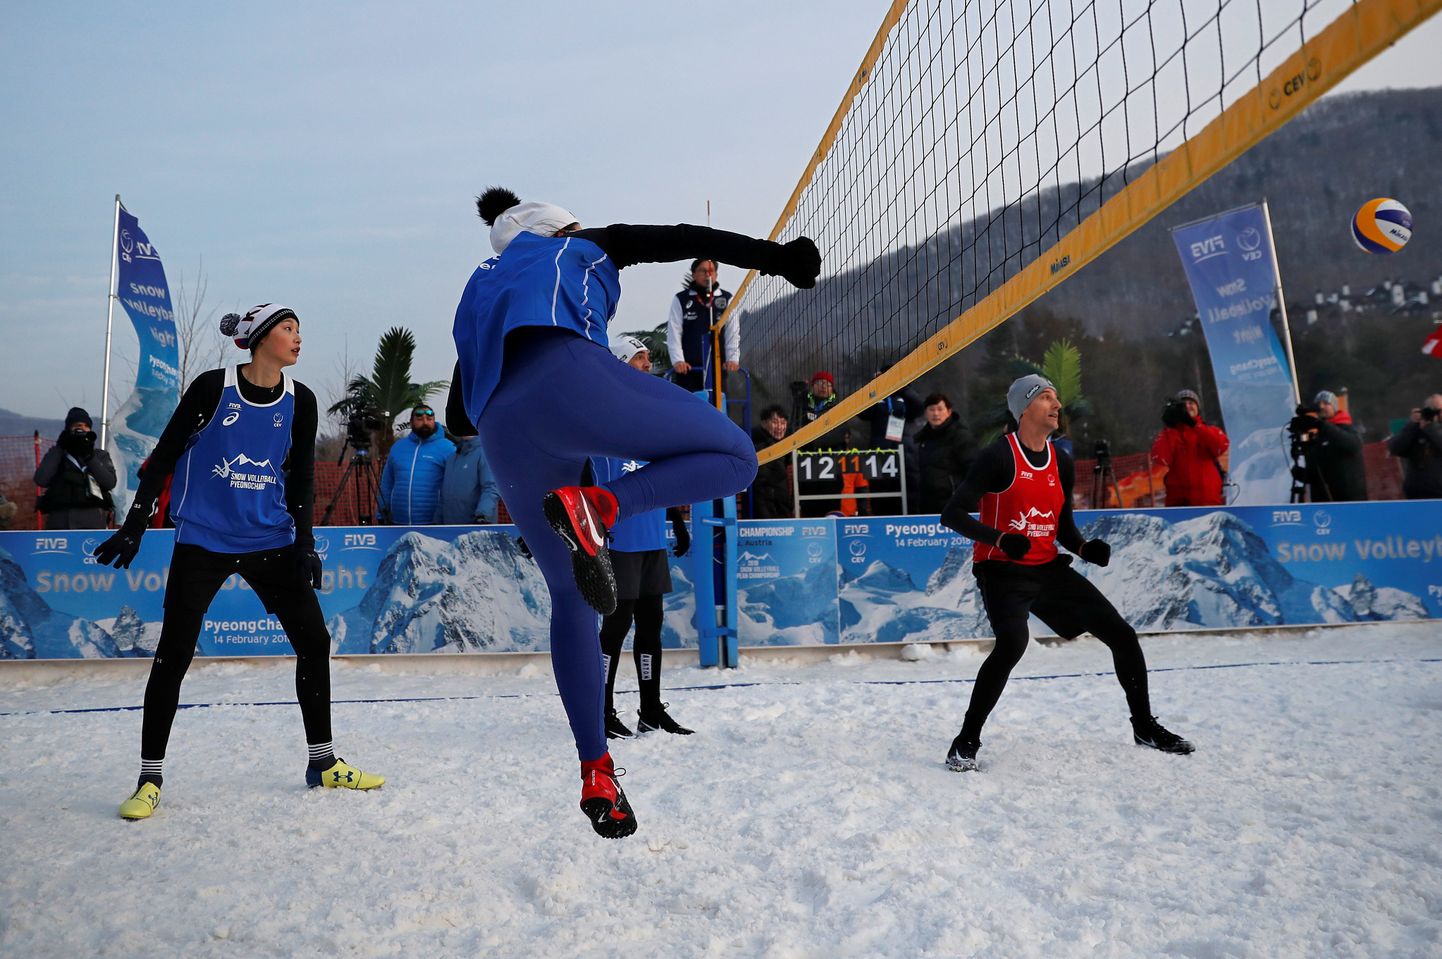 Lumevõrkpalli harrastati ka Pyeongchangi olümpiamängudel.